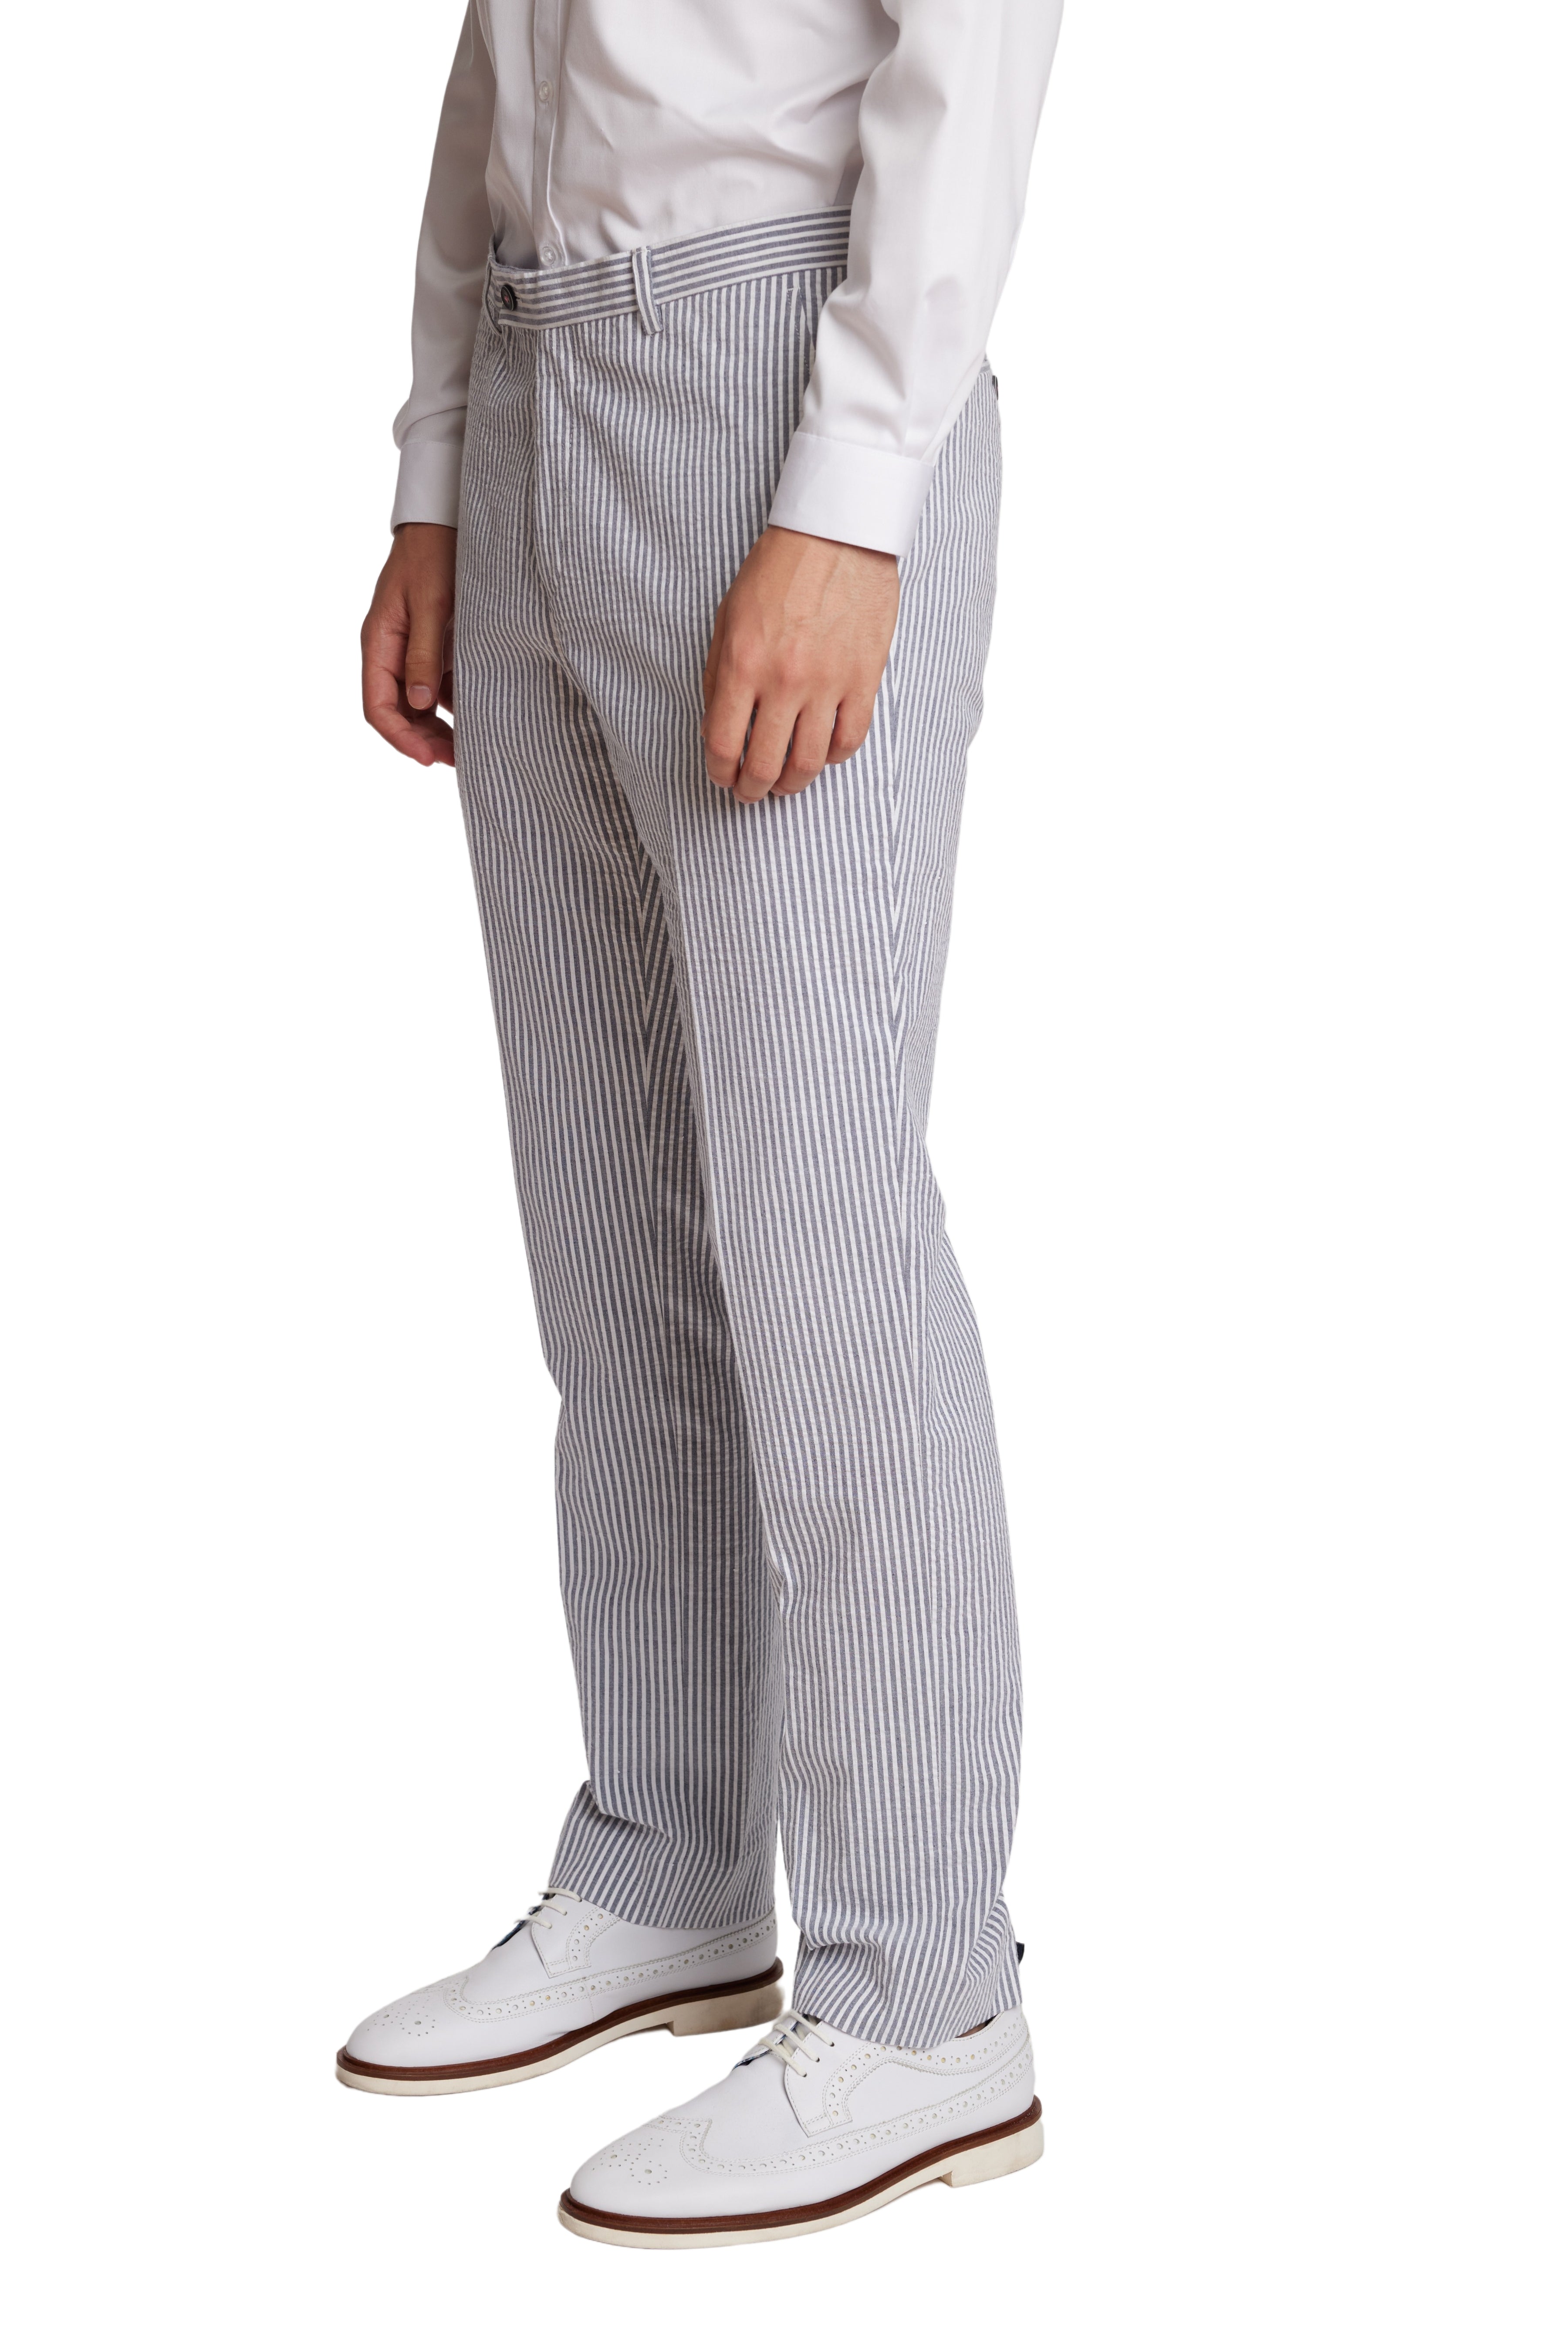 Downing Pants - slim - Grey & Wht Seersucker Stripes